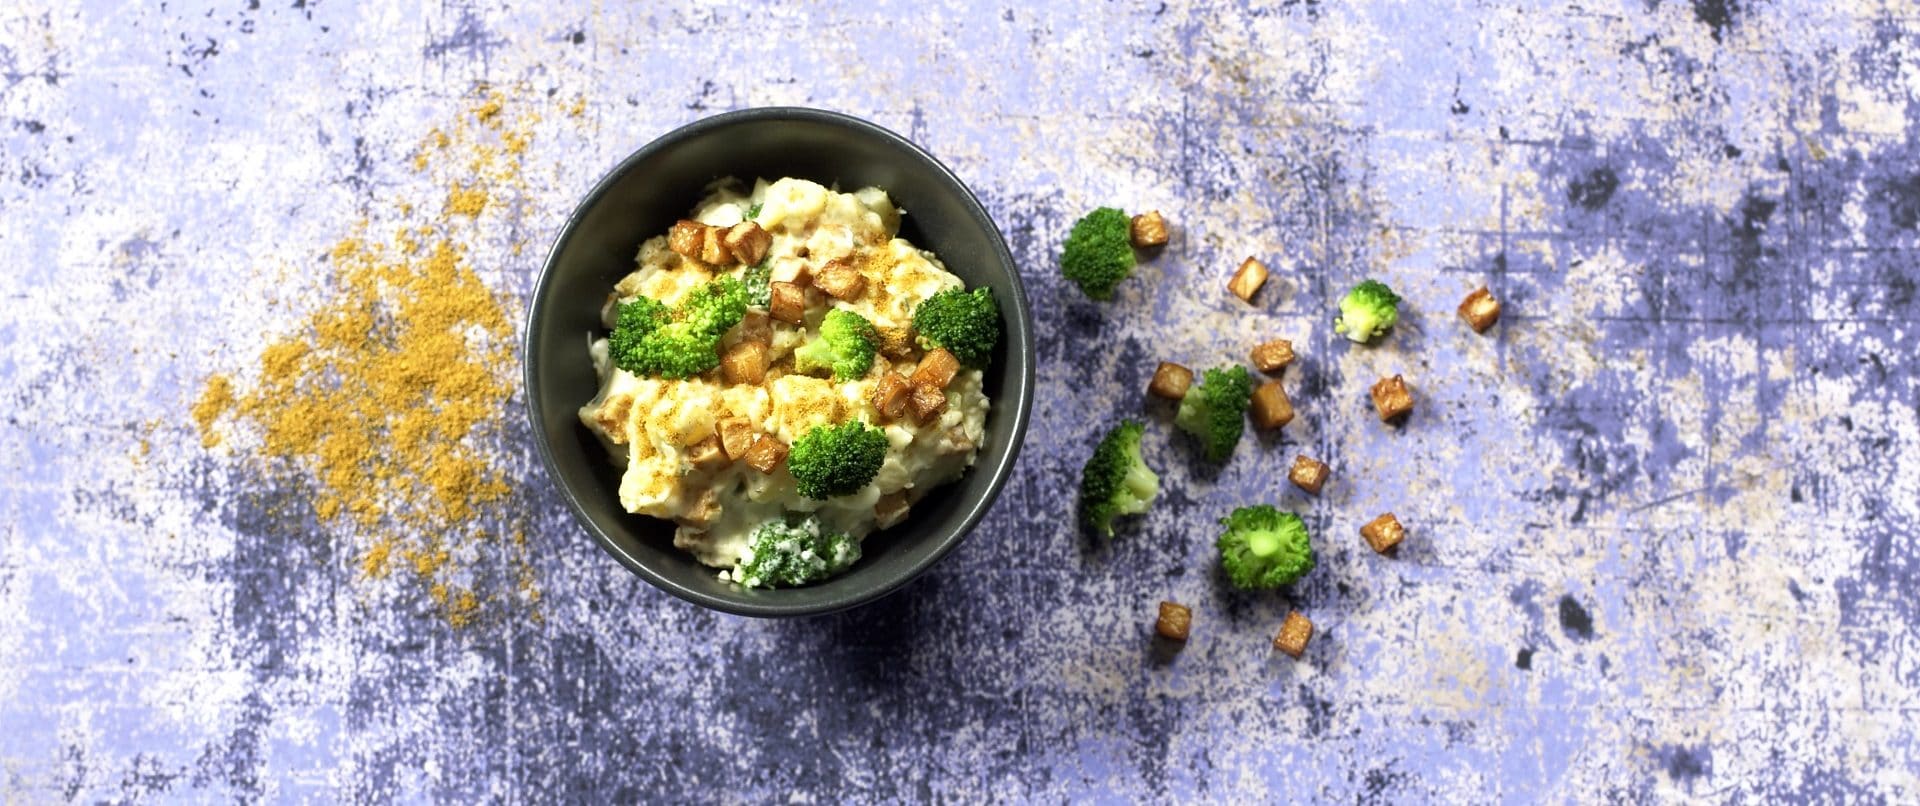 potetsalat med brokkoli og sellerirot